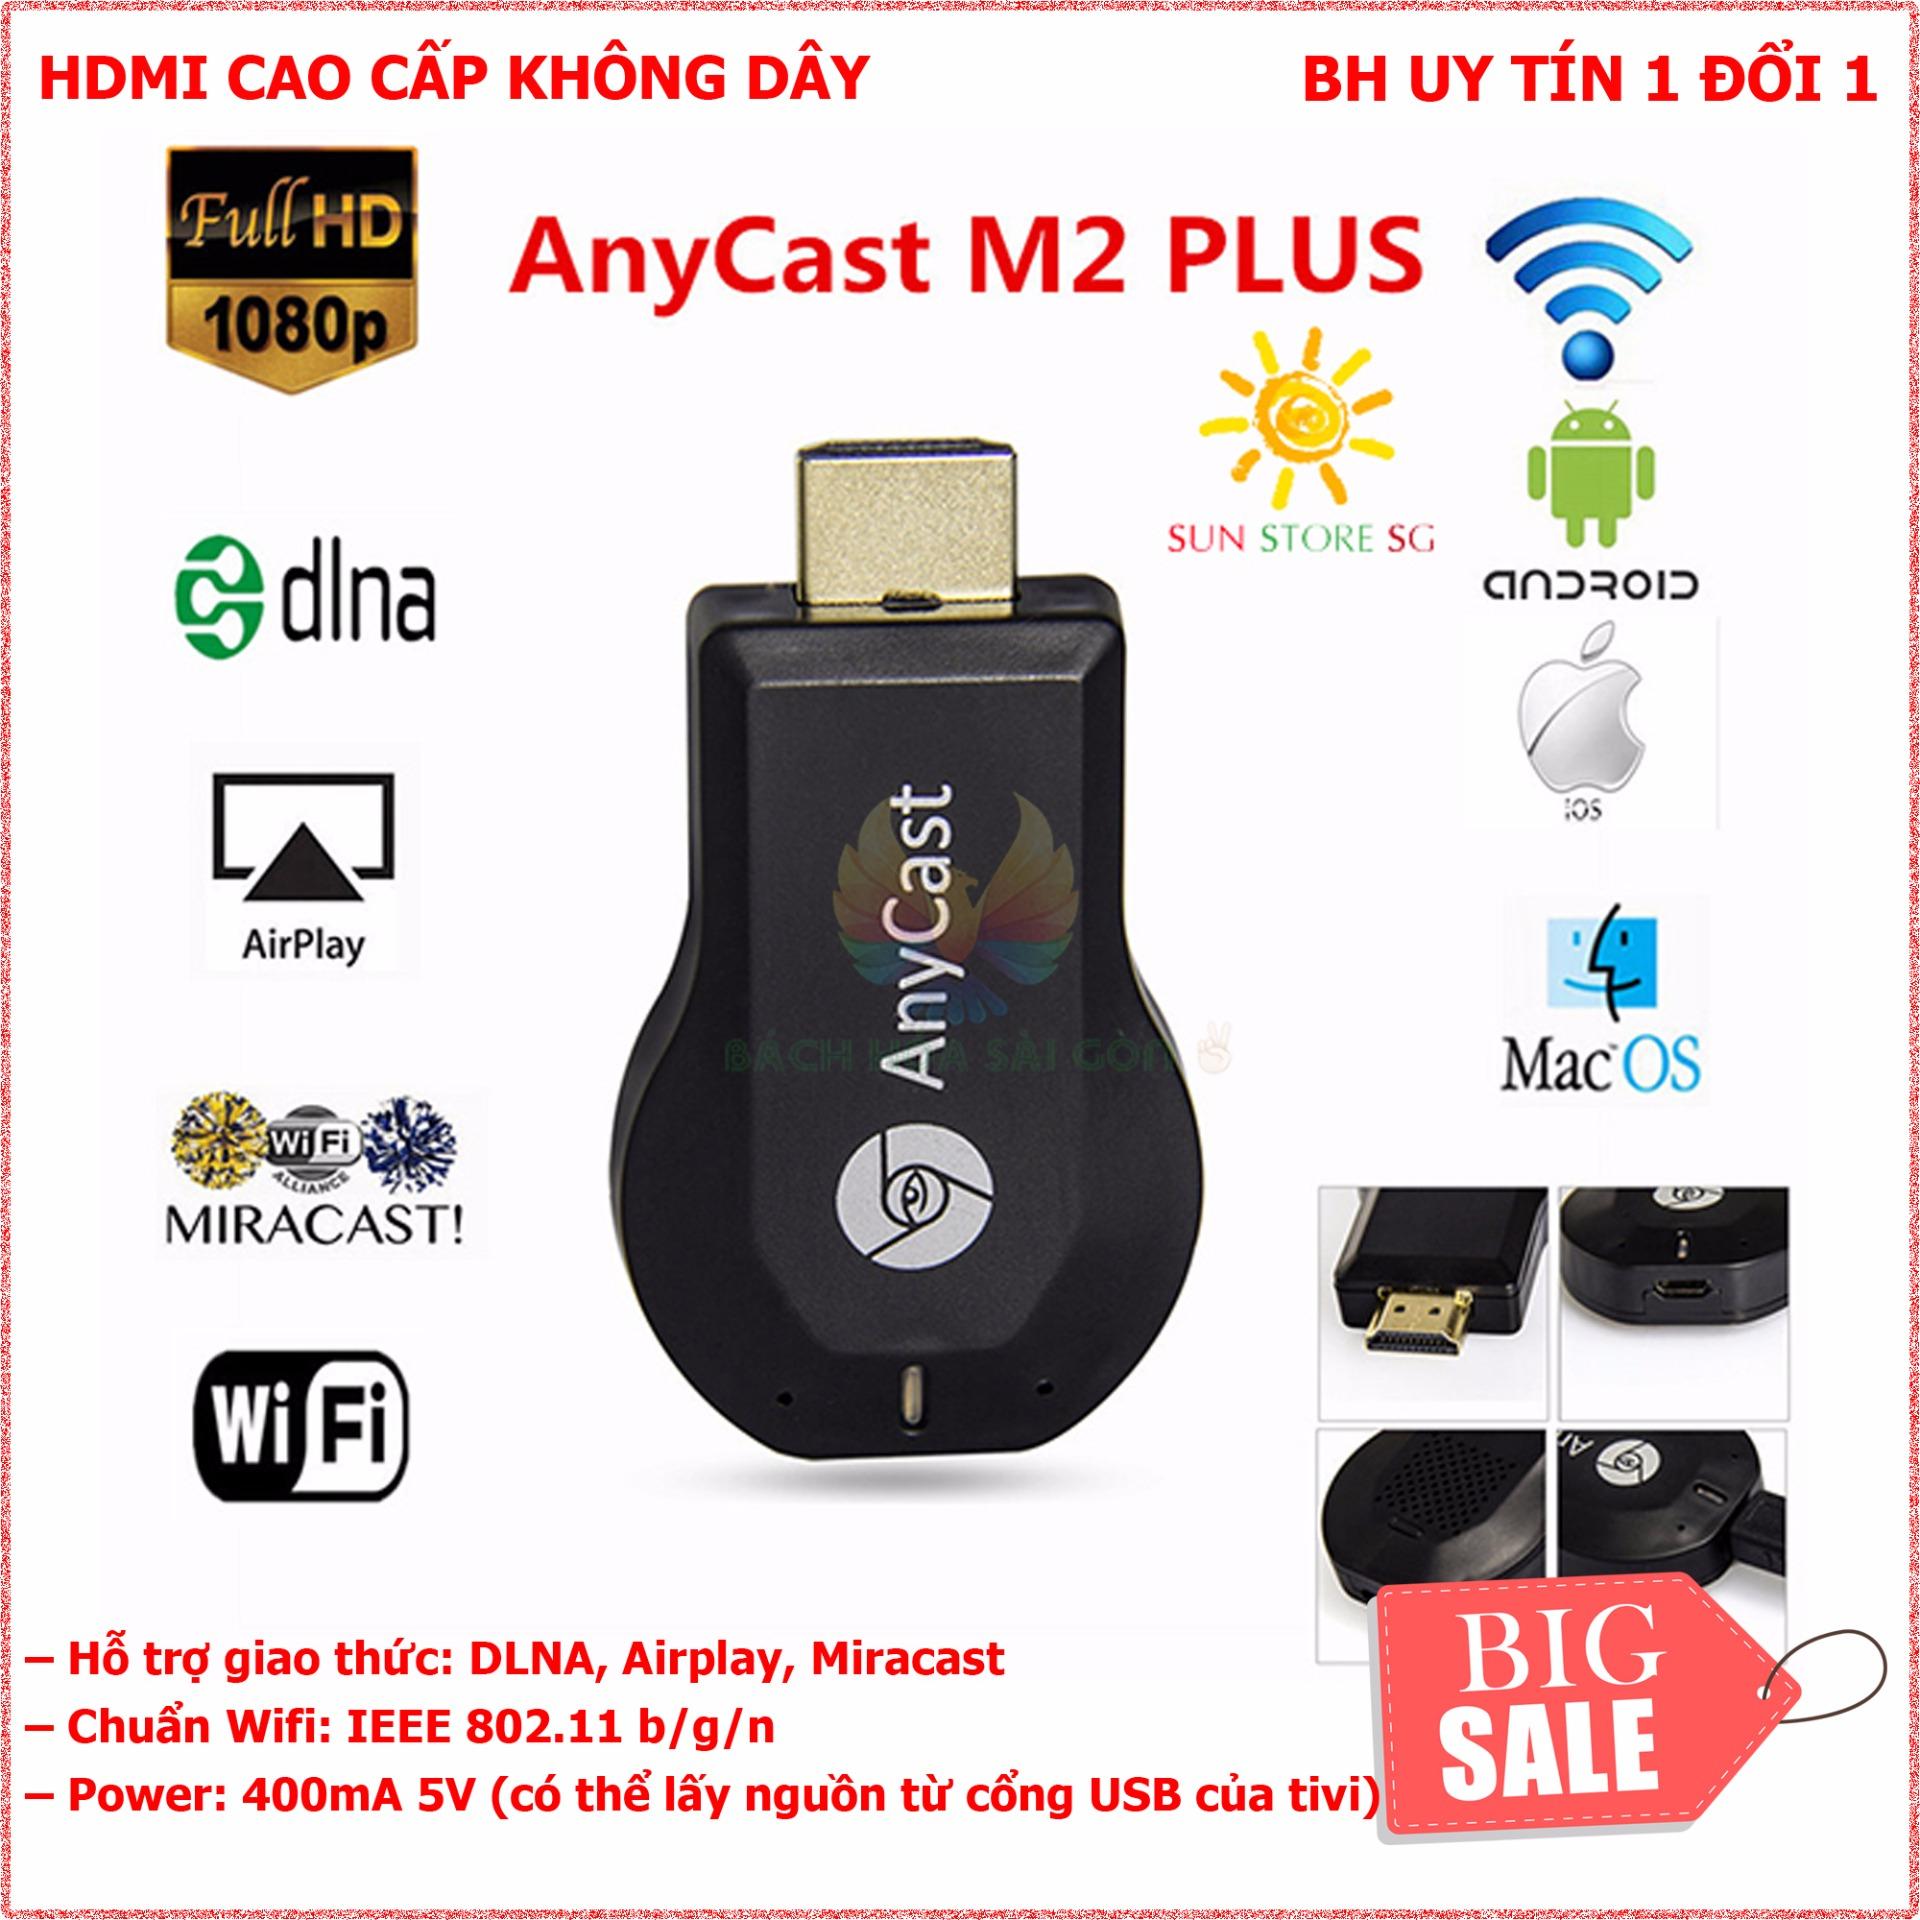 Thiết bị kết nối HDMI không dây điện thoại, ipad .với TV Anycast M2 Plus.dễ dàng chia sẻ hình ảnh,video lên TV TỐC ĐỘ VÀ CHẤT LƯỢNG CỰC TỐT ( BẢO HÀNH 1 ĐỔI 1 TOÀN QUỐC)